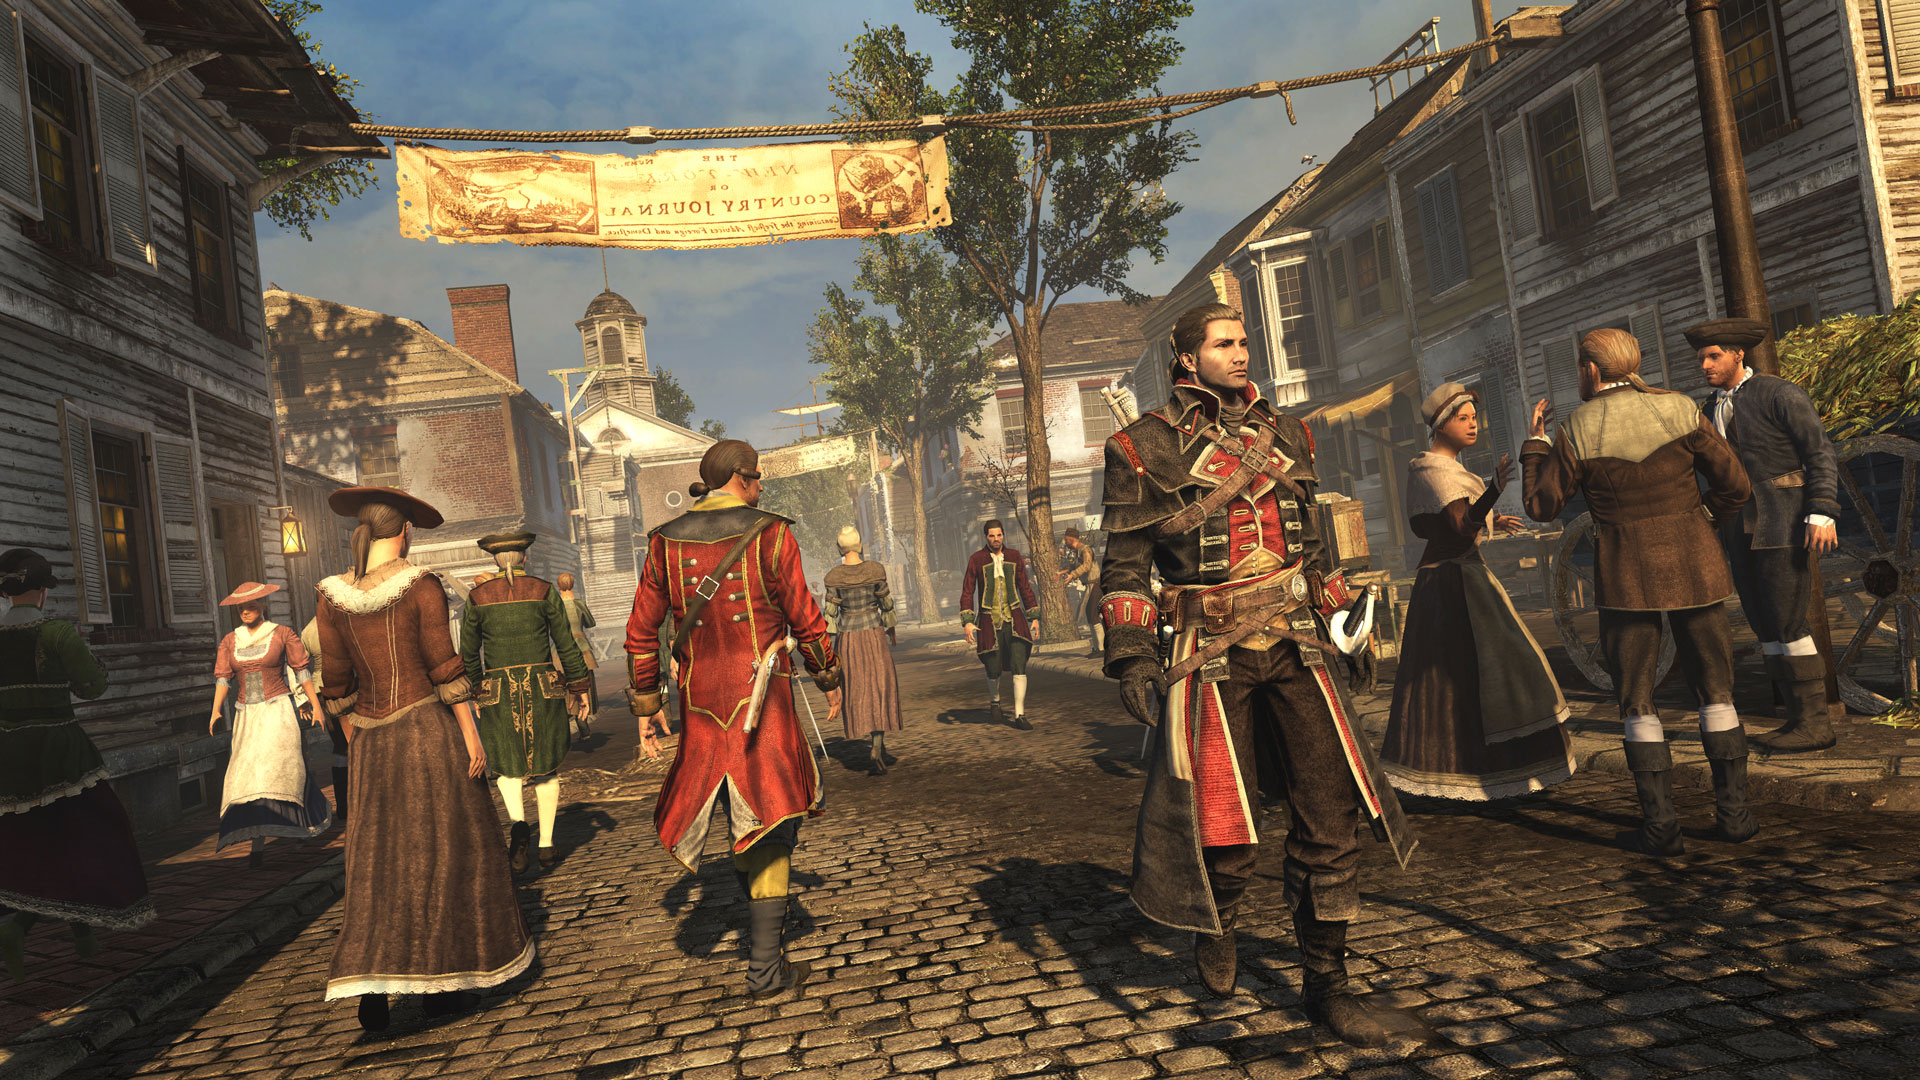 Скриншот Assassin’s Creed Изгой Rogue (Uplay) RU/CIS